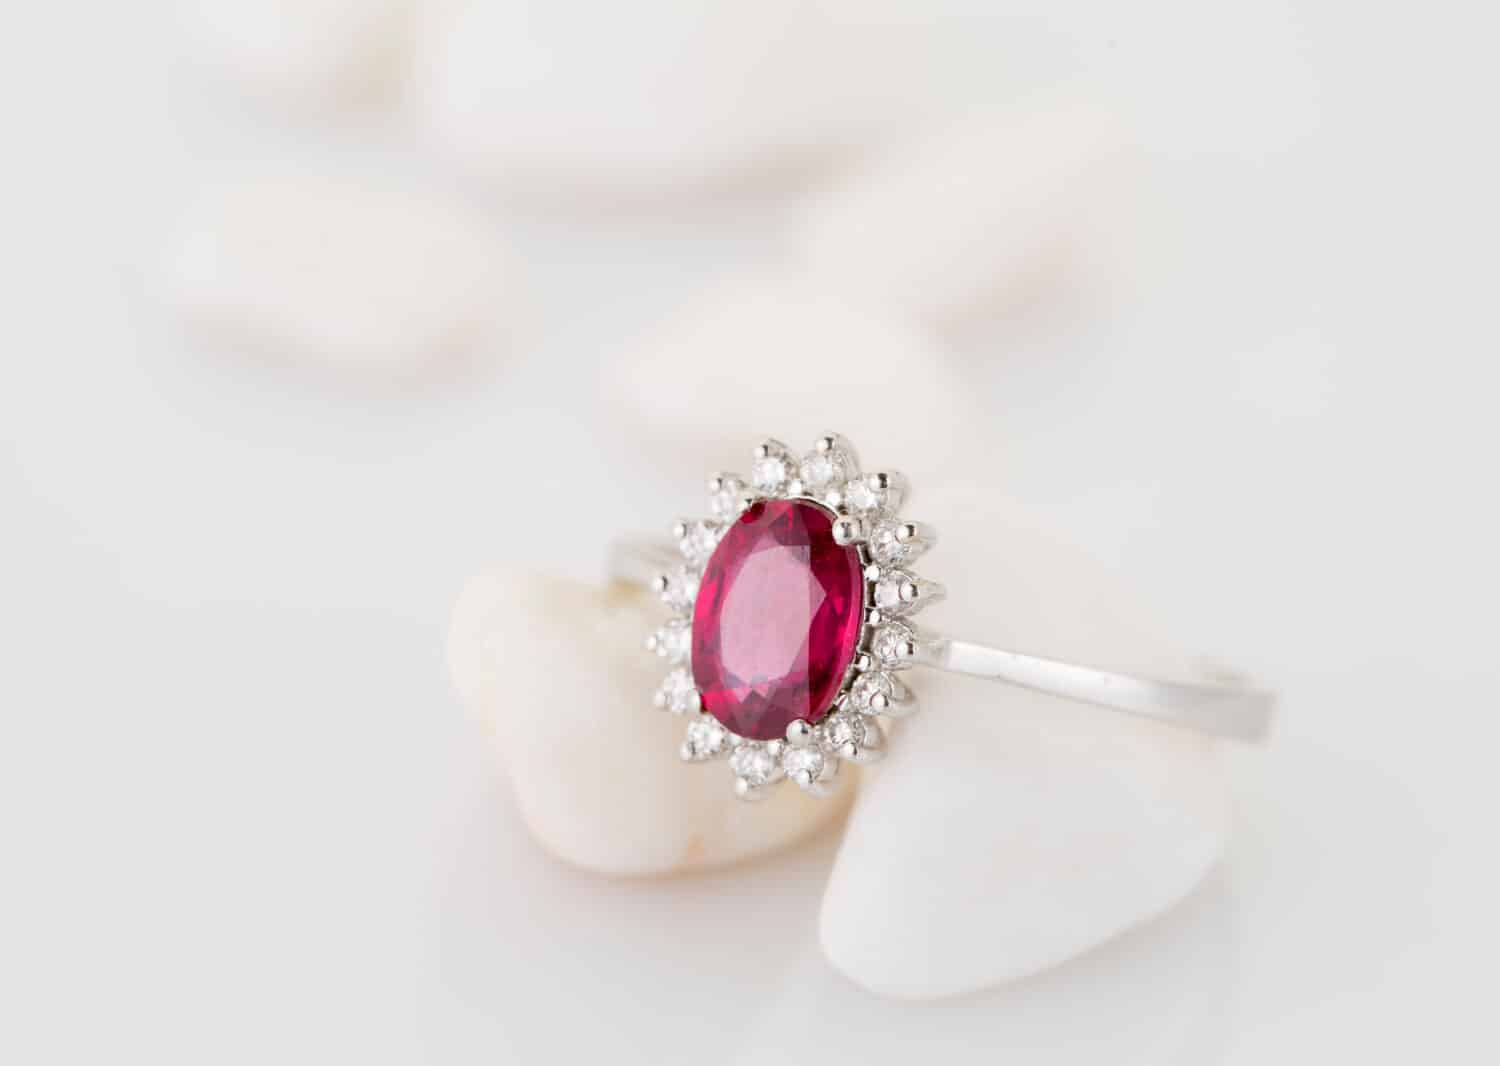 Anello con diamante topazio rosso (rubino) su sfondo bianco morbido.